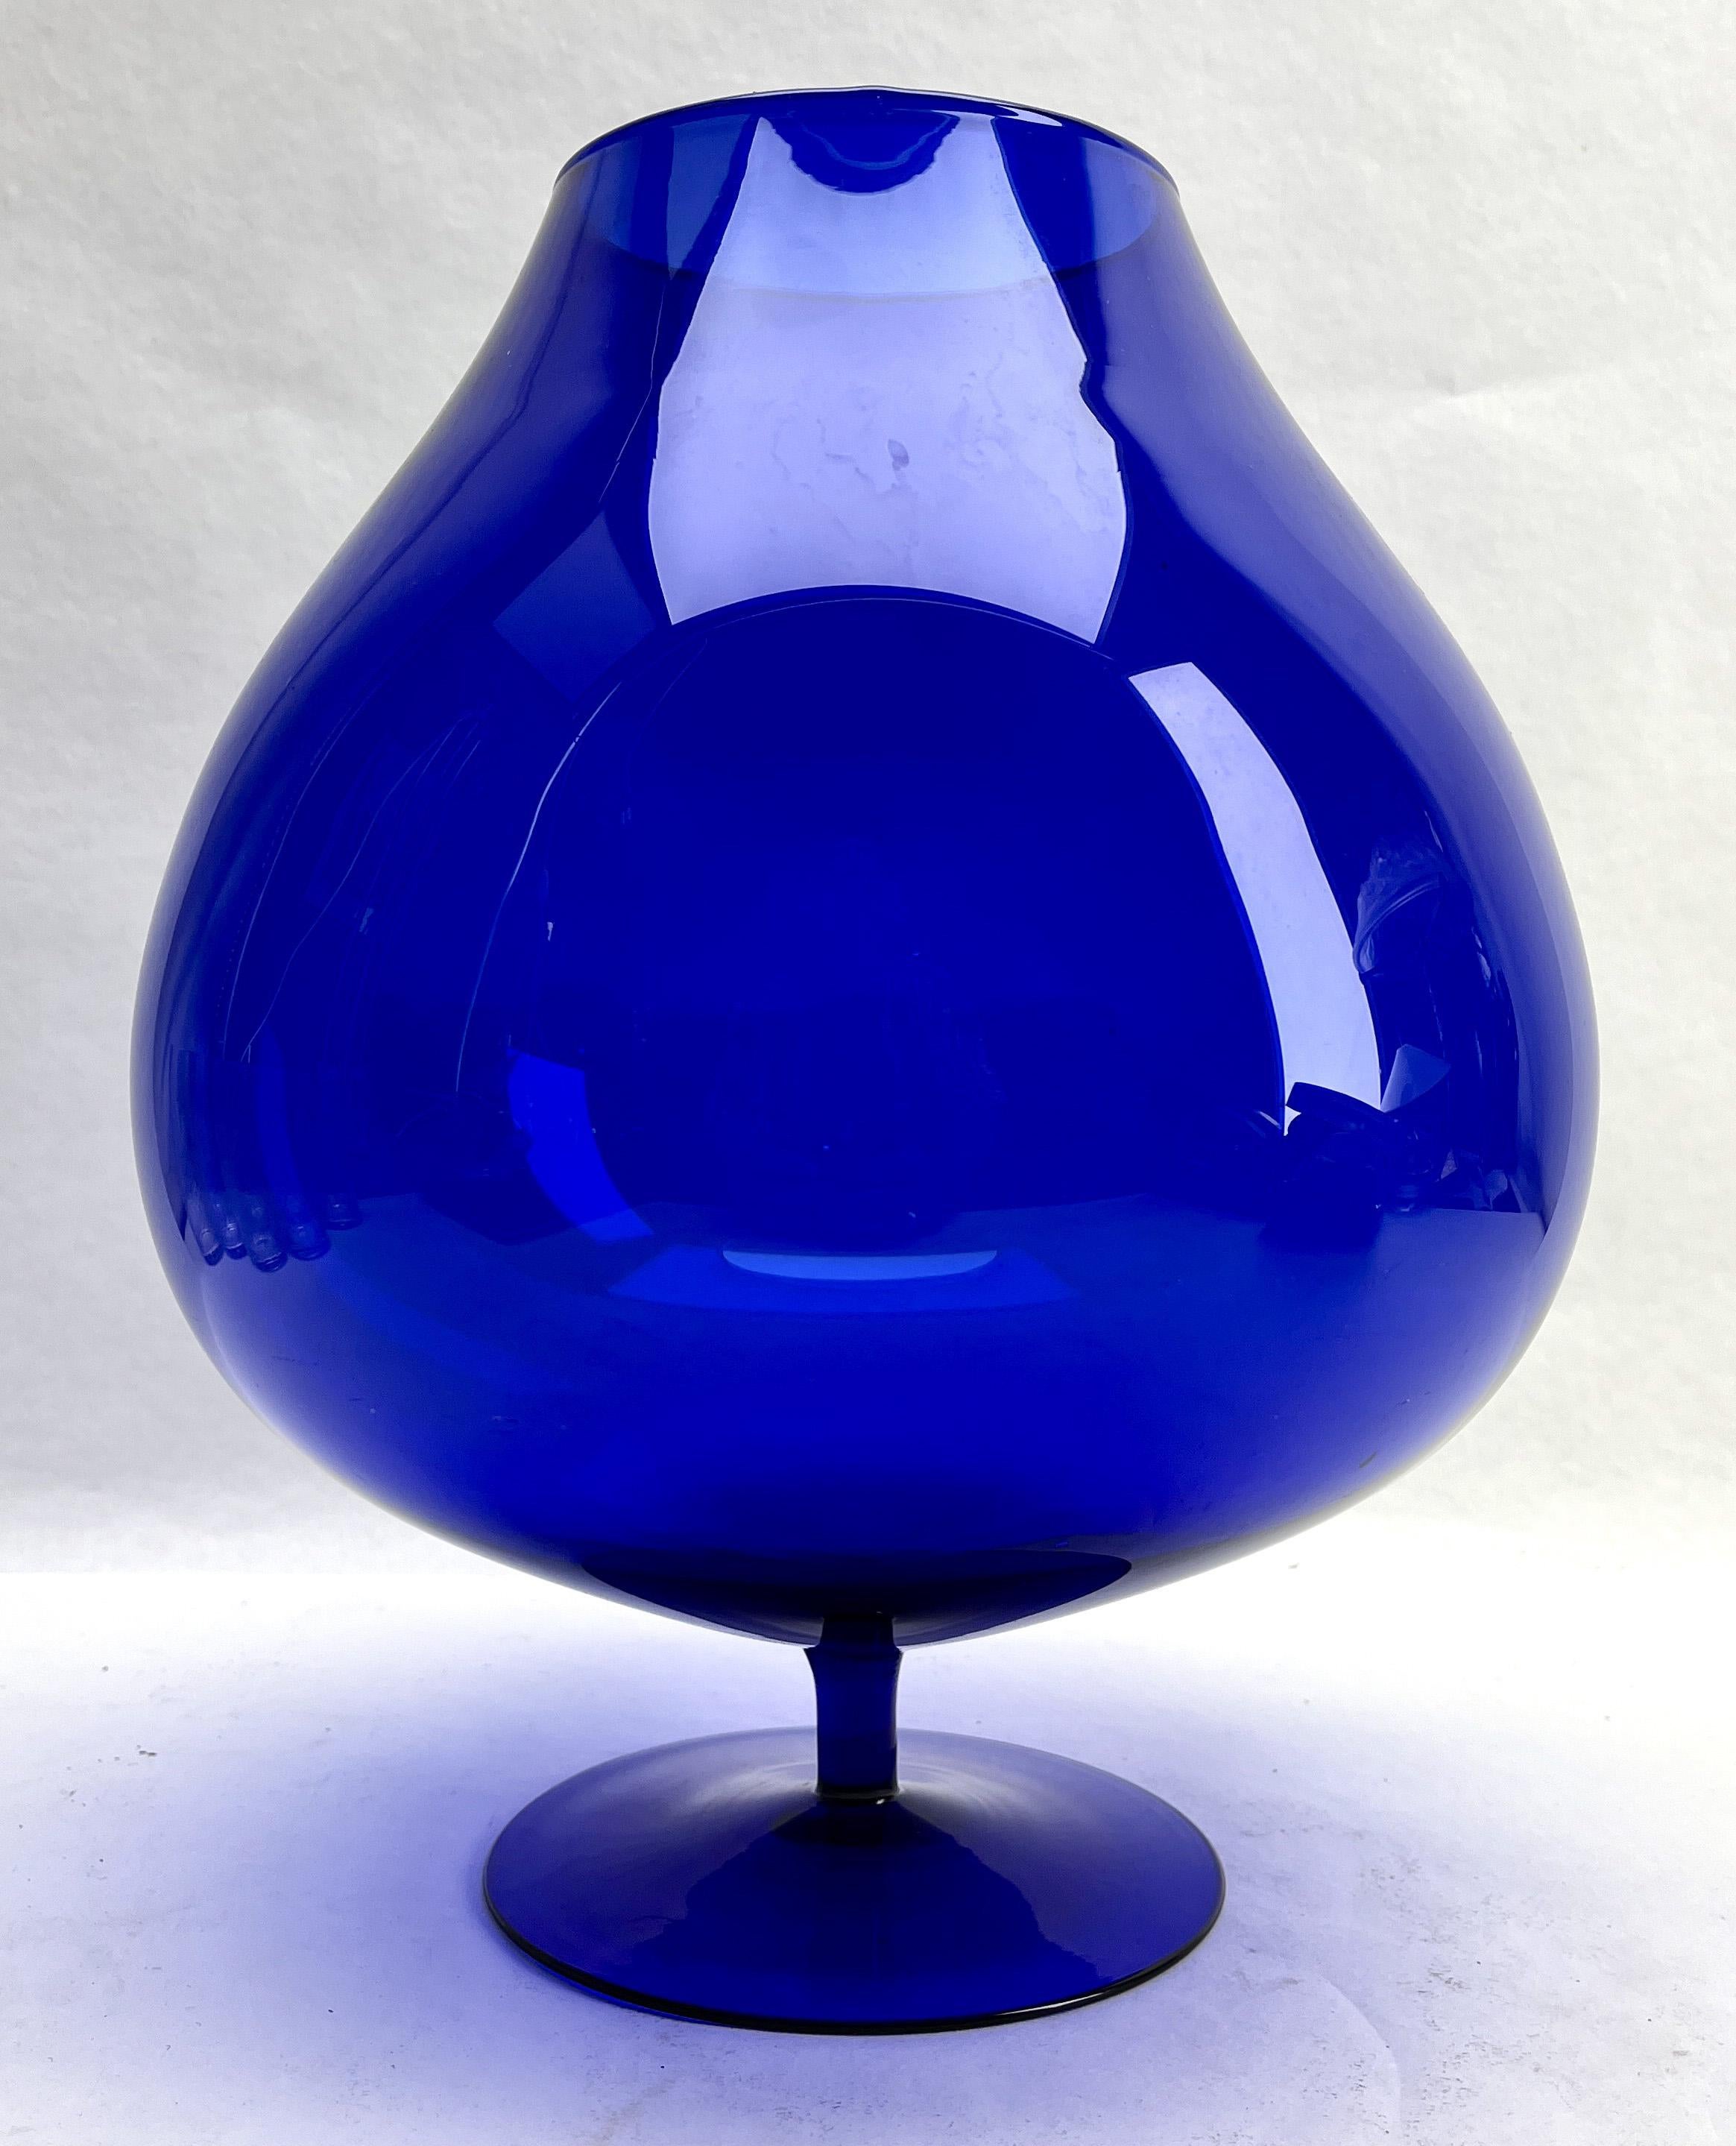 Opaline di Florence (Empoli) opalisierende italienische Kunstglasvase der späten 1950er oder frühen 1960er Jahre. 

Wunderschöner mundgeblasener Opal und handapplizierter Einfuß
Maße: 27 cm hoch, Durchmesser 20 cm

Das Stück ist in ausgezeichnetem